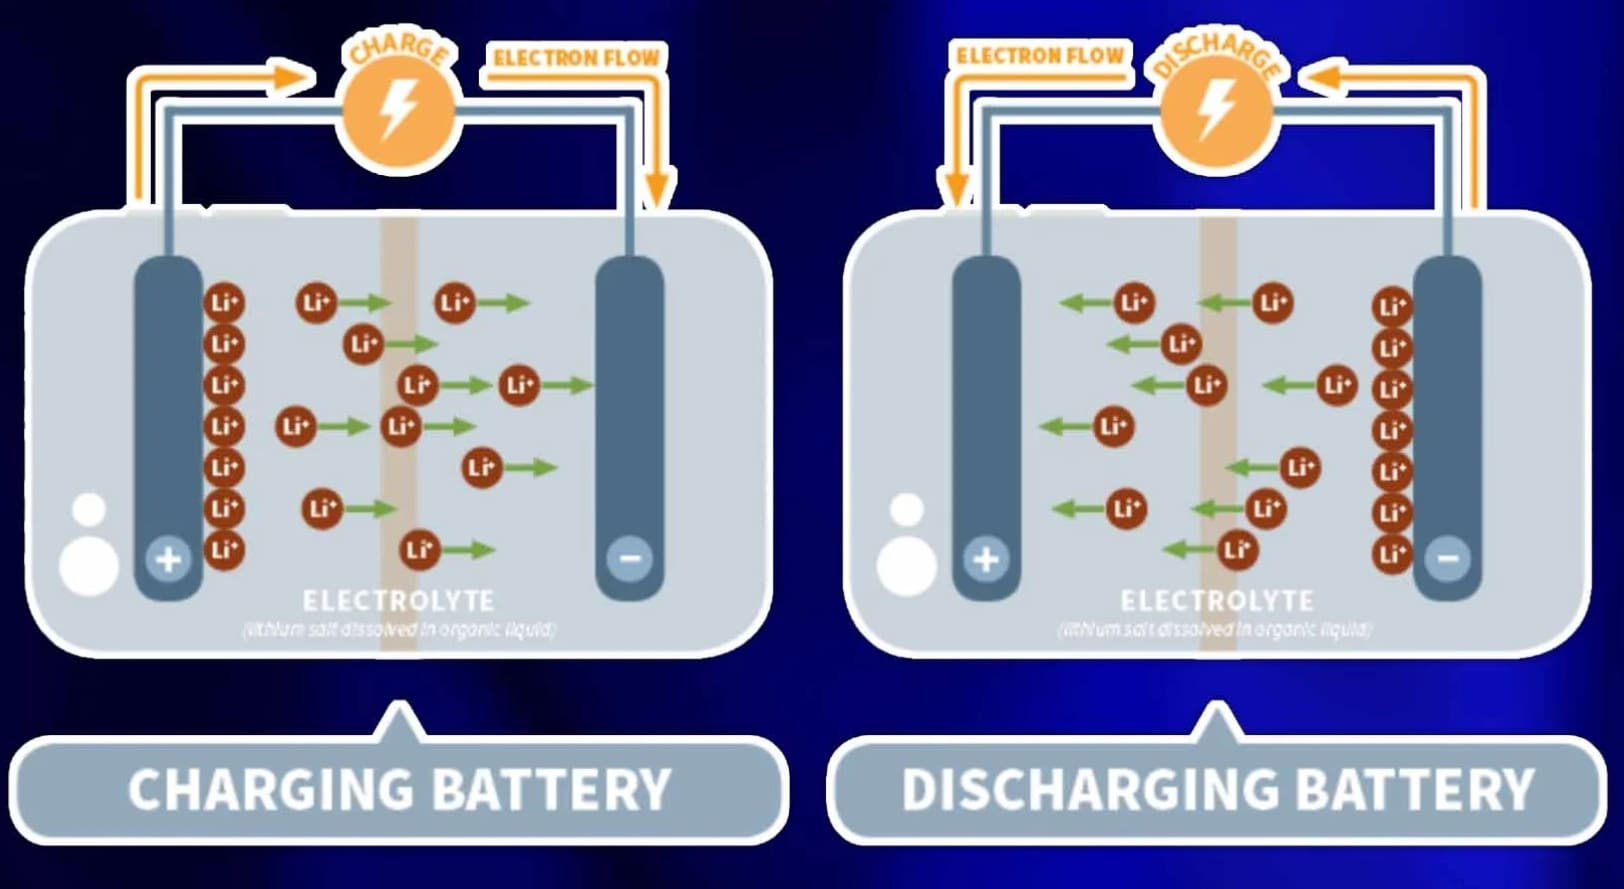 Tirer le meilleur parti des batteries lithium-ion et regarder au-delà